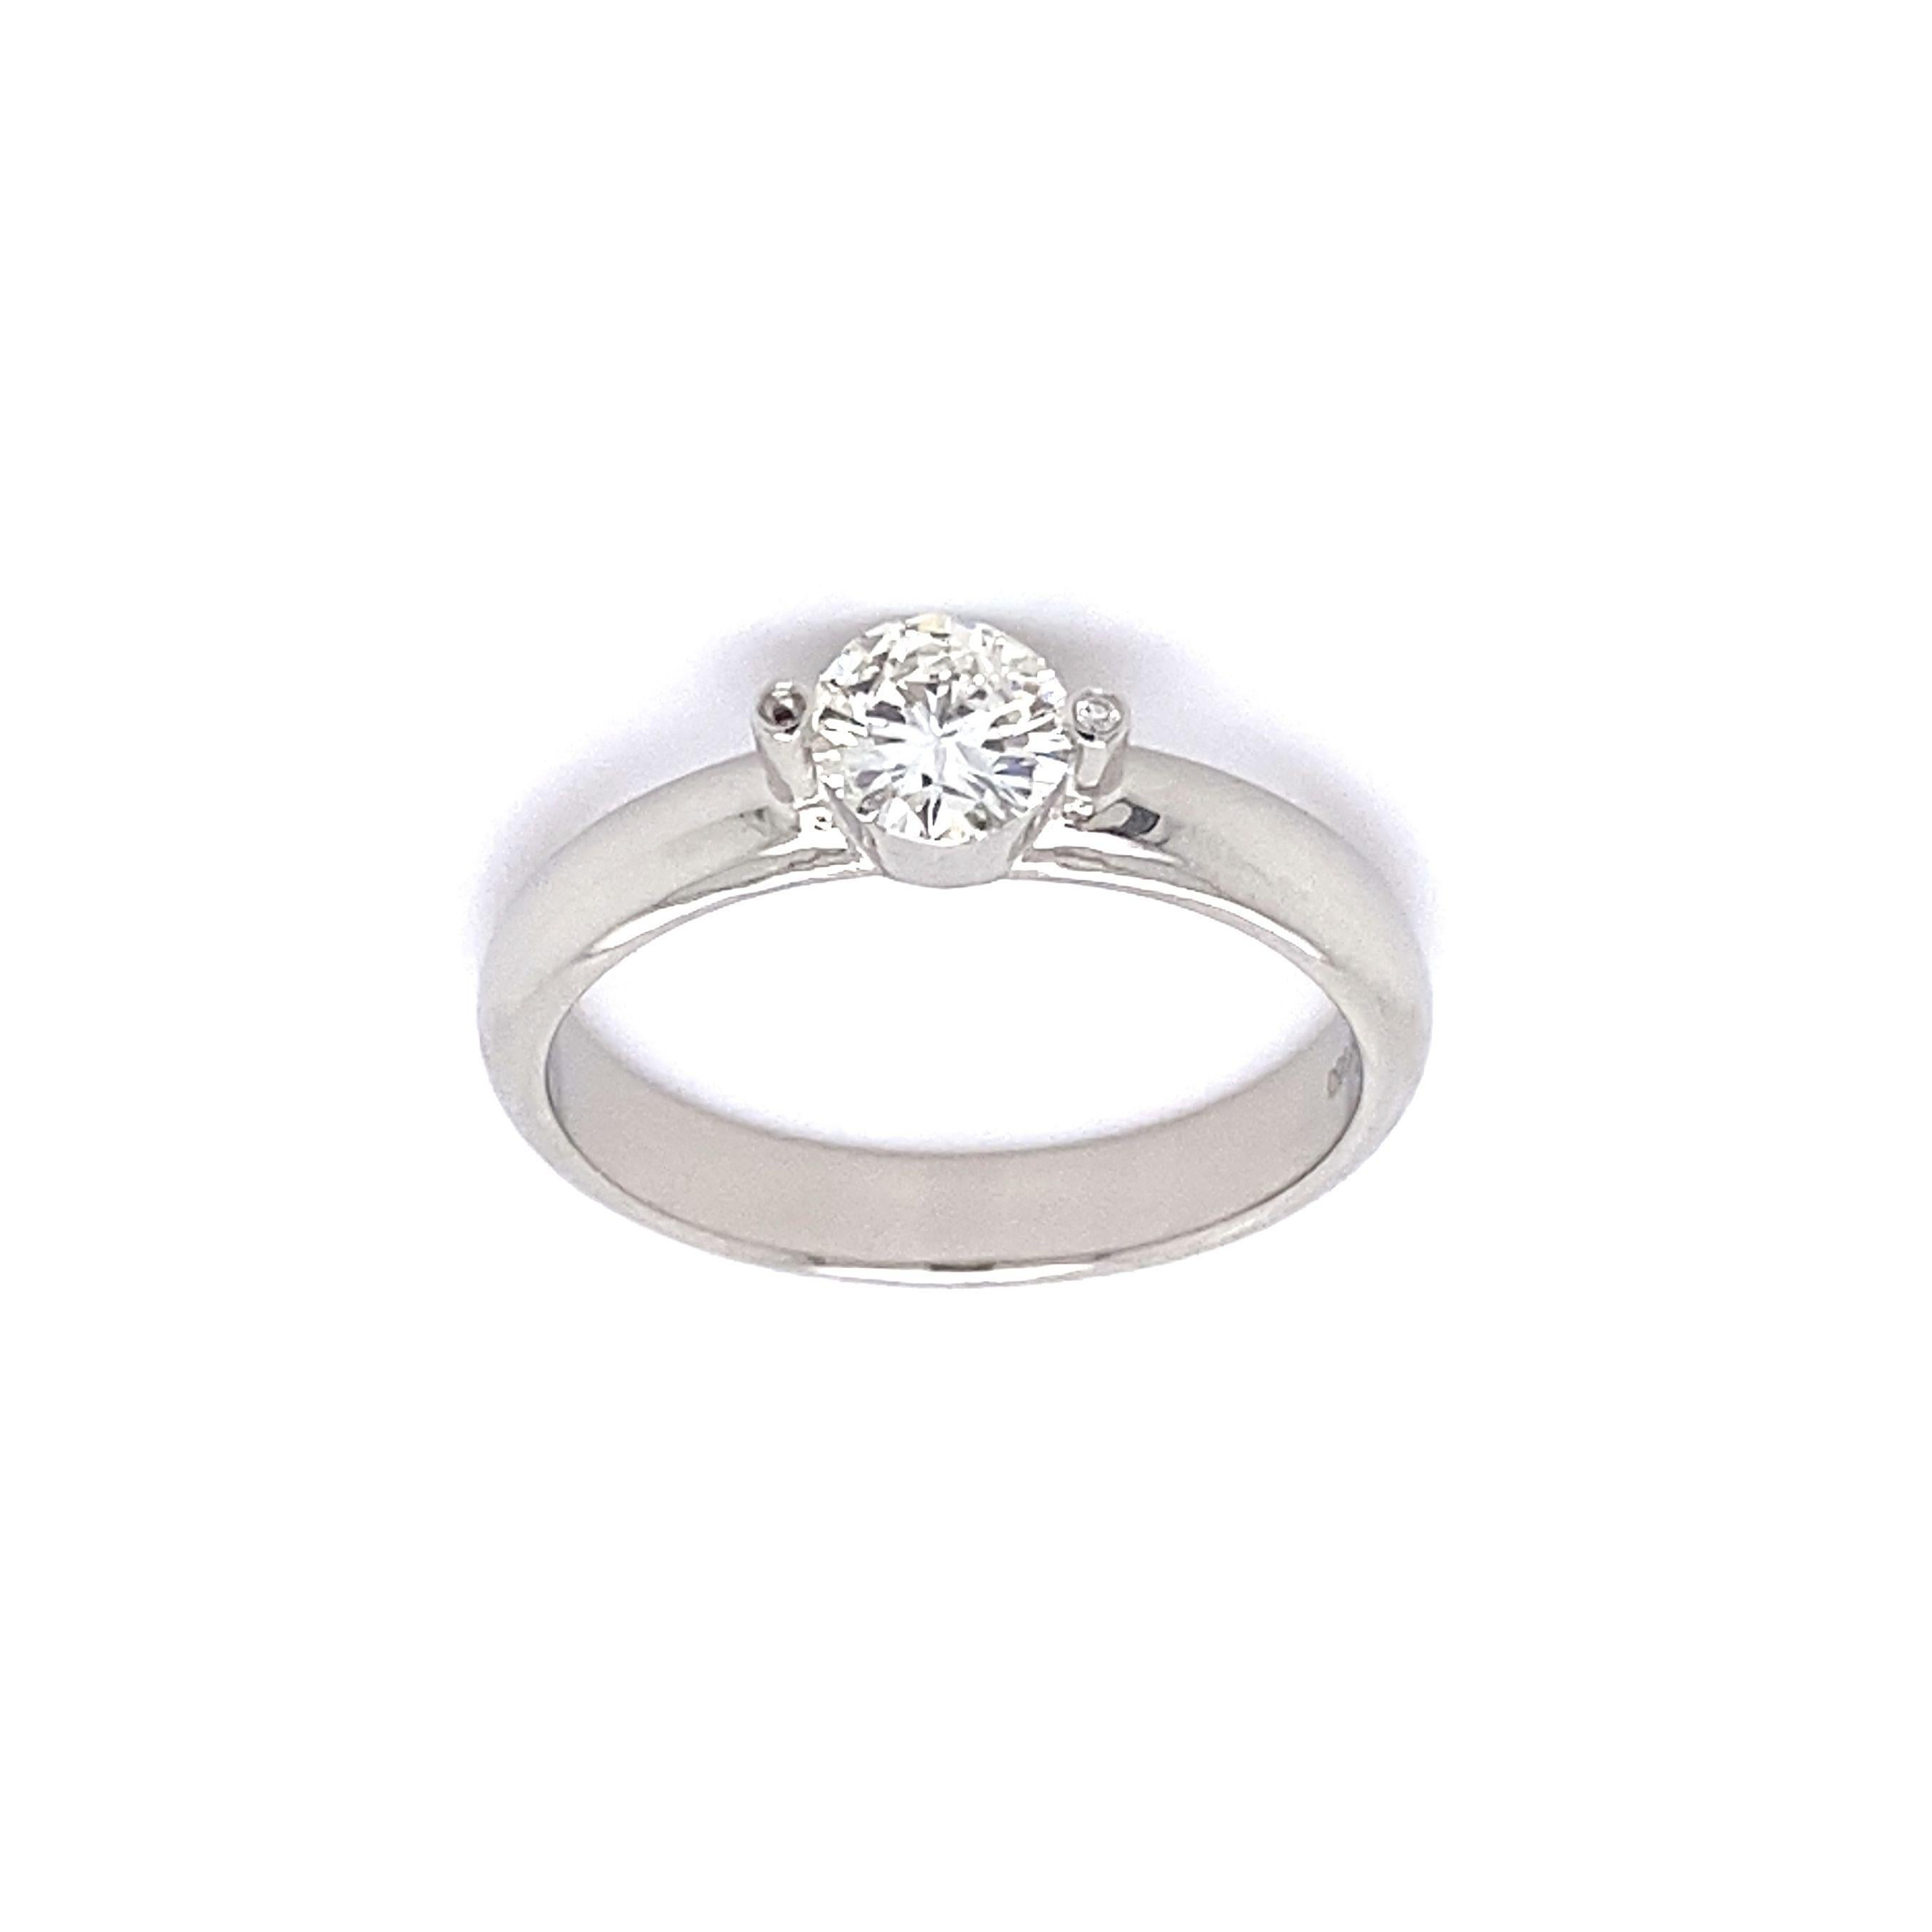 Designer Gumuchian Solitär Diamant Platin Ring, sicher mit einem Hand-Set Runde Brillantschliff Diamant mit einem Gewicht von ca. 0,52 Karat, H / I Farbe, I1 Klarheit, akzentuiert durch die Seite Diamanten eingebettet. Handgefertigt in Platin.